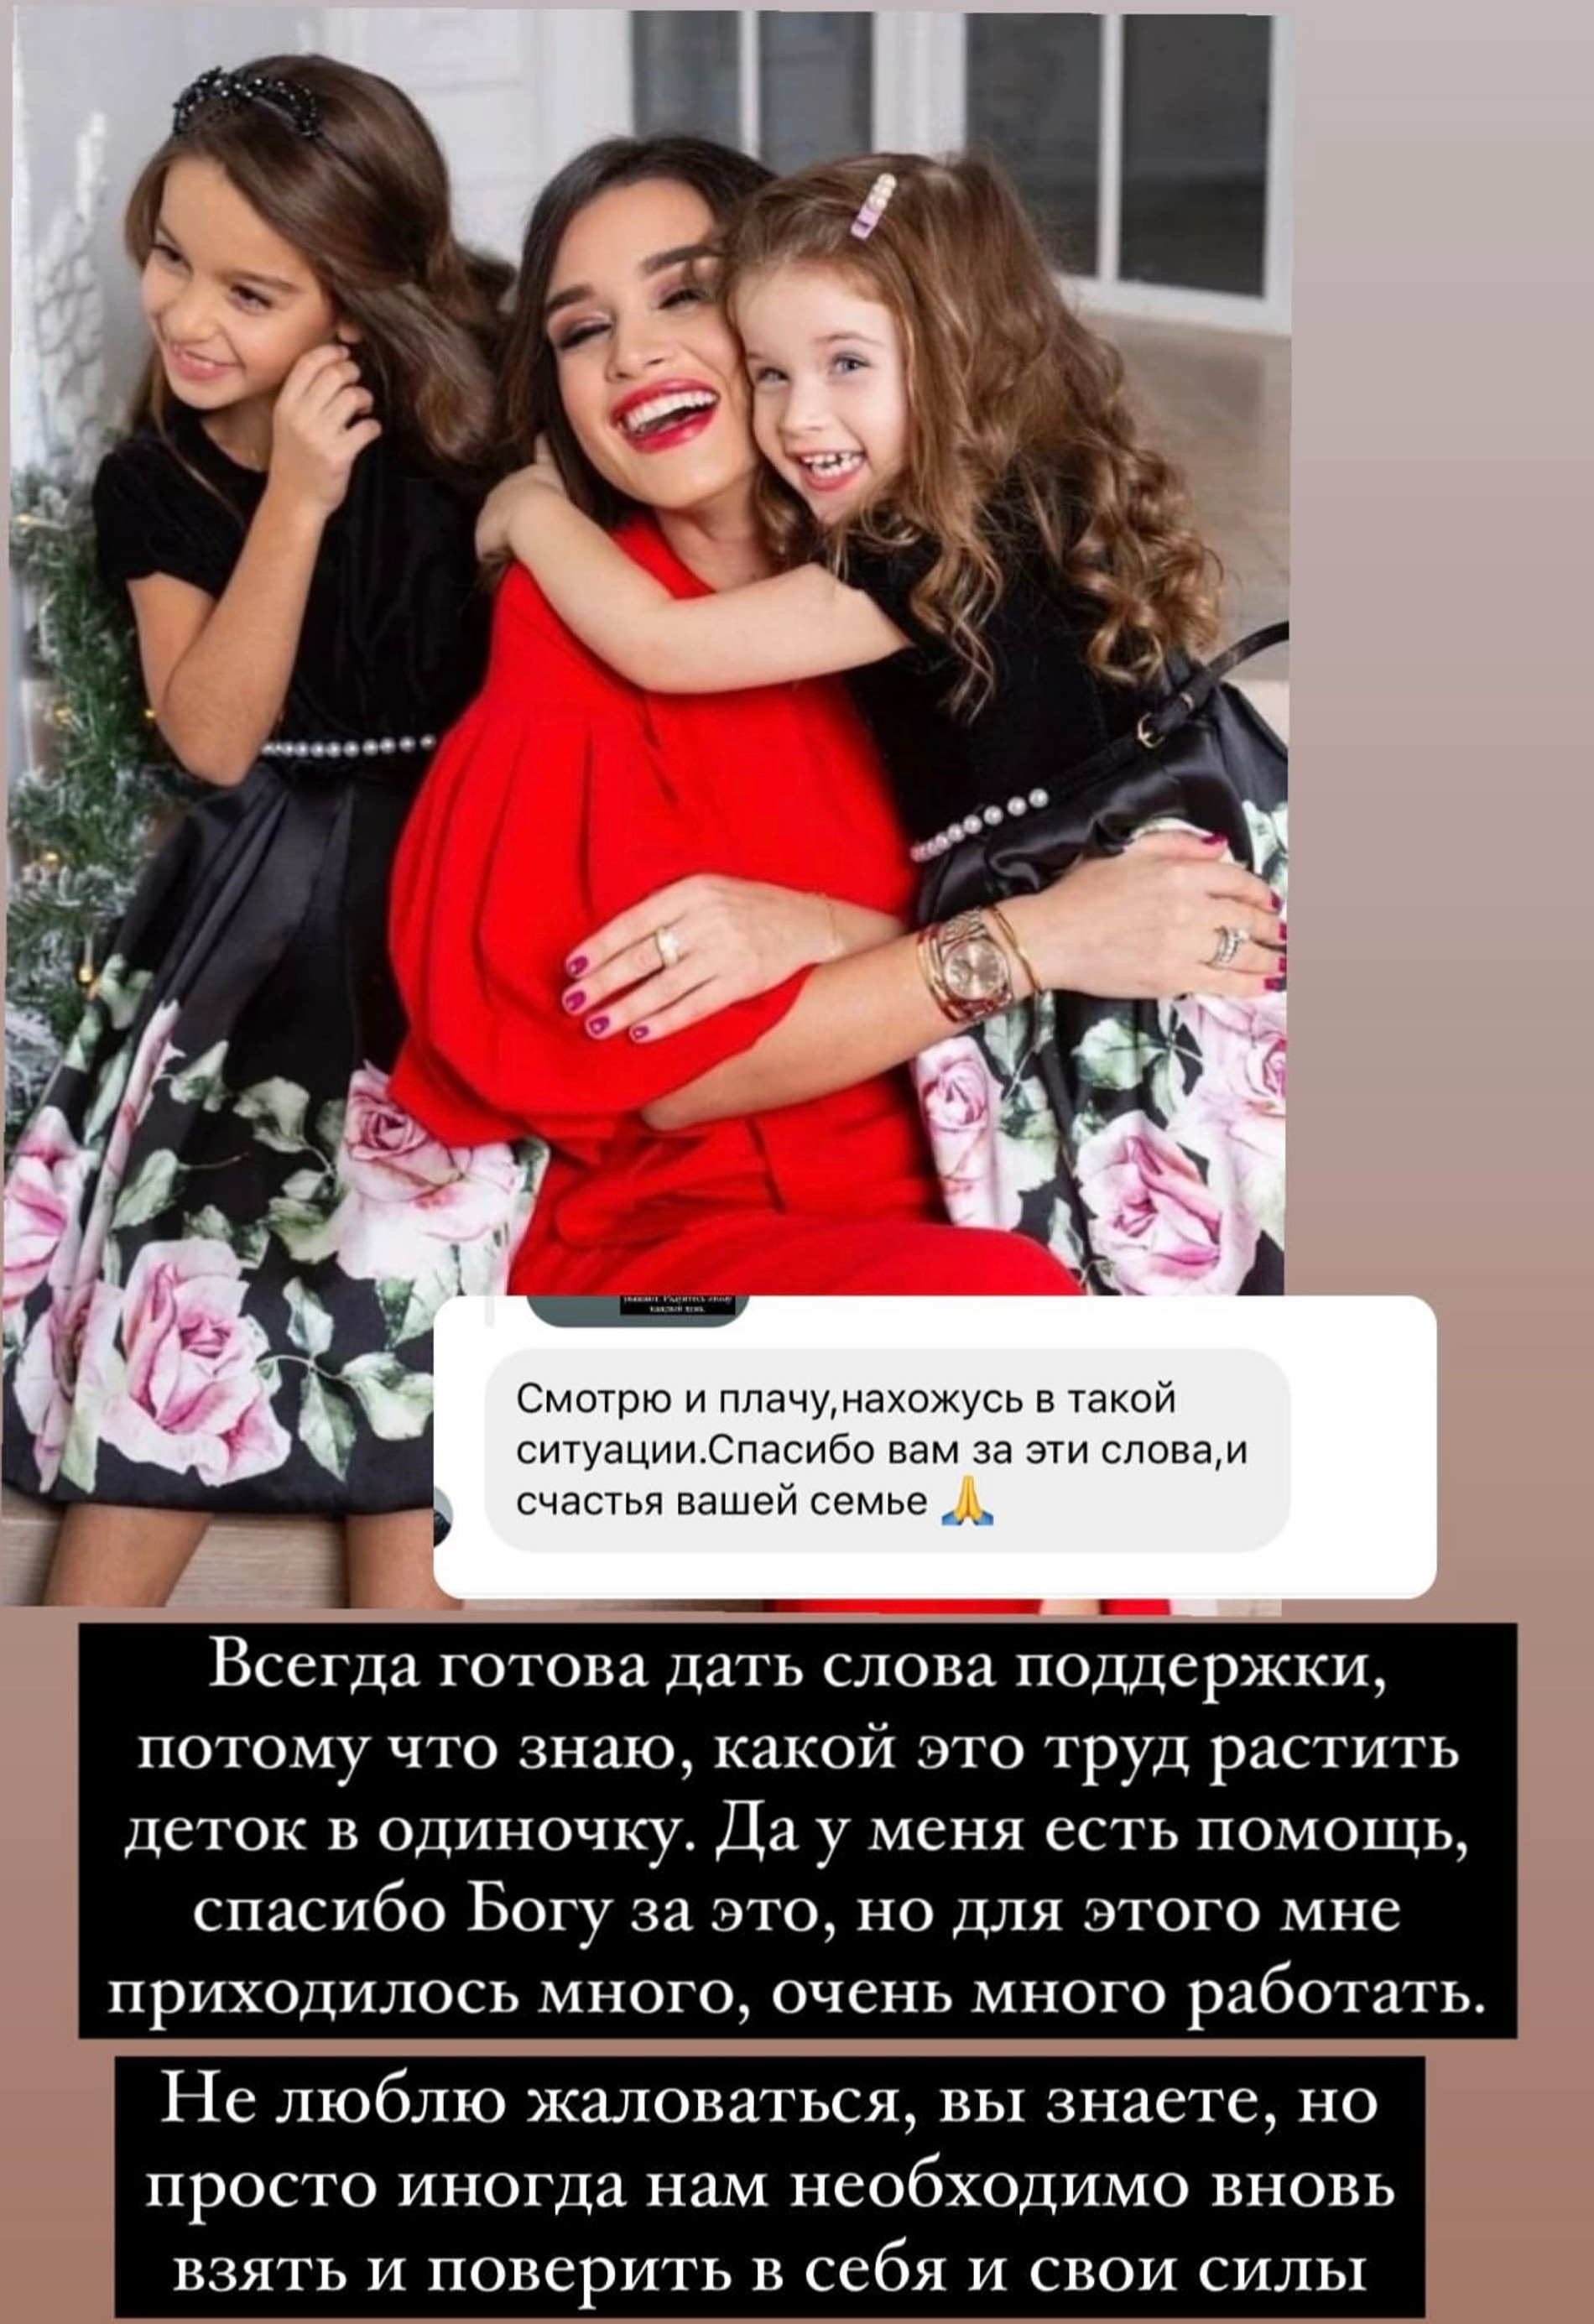 Ксения Бородина с дочками
Фото: Инстаграм (запрещен в РФ) @borodylia